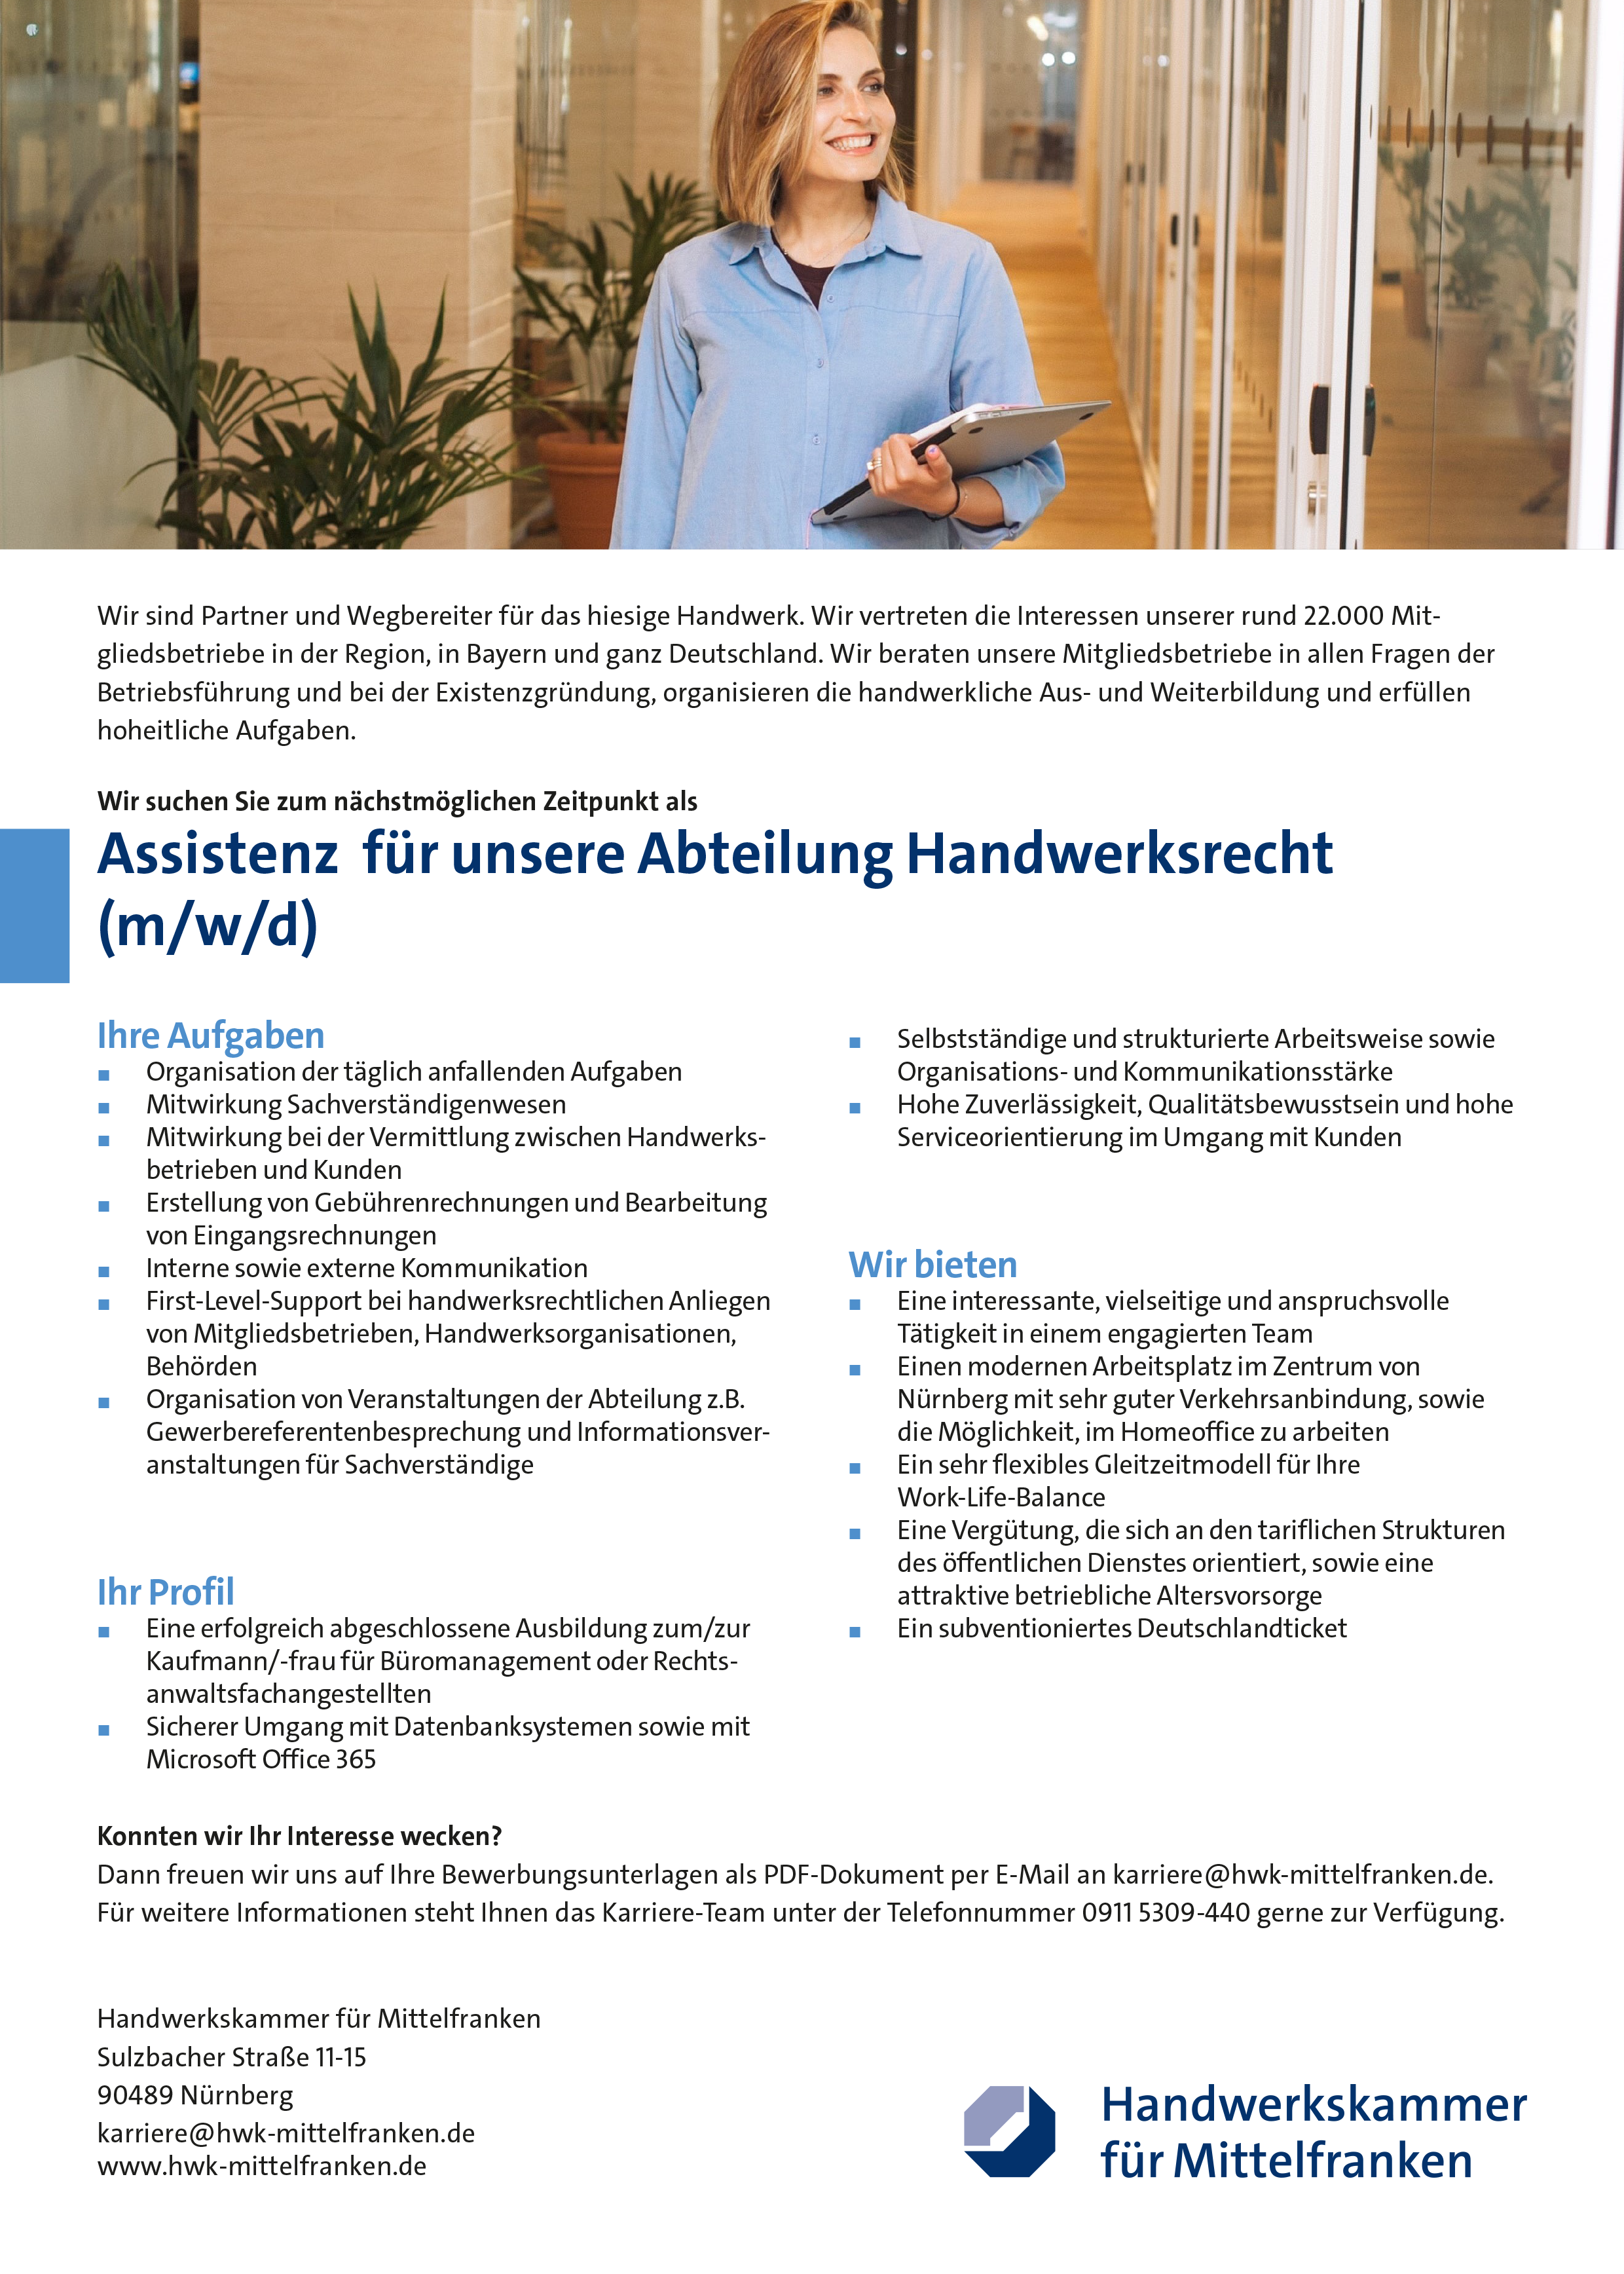 HWK Mittelfranken Assistenz (m/w/d) für die Abteilung Handwerksrecht Nürnberg stellencompass.de